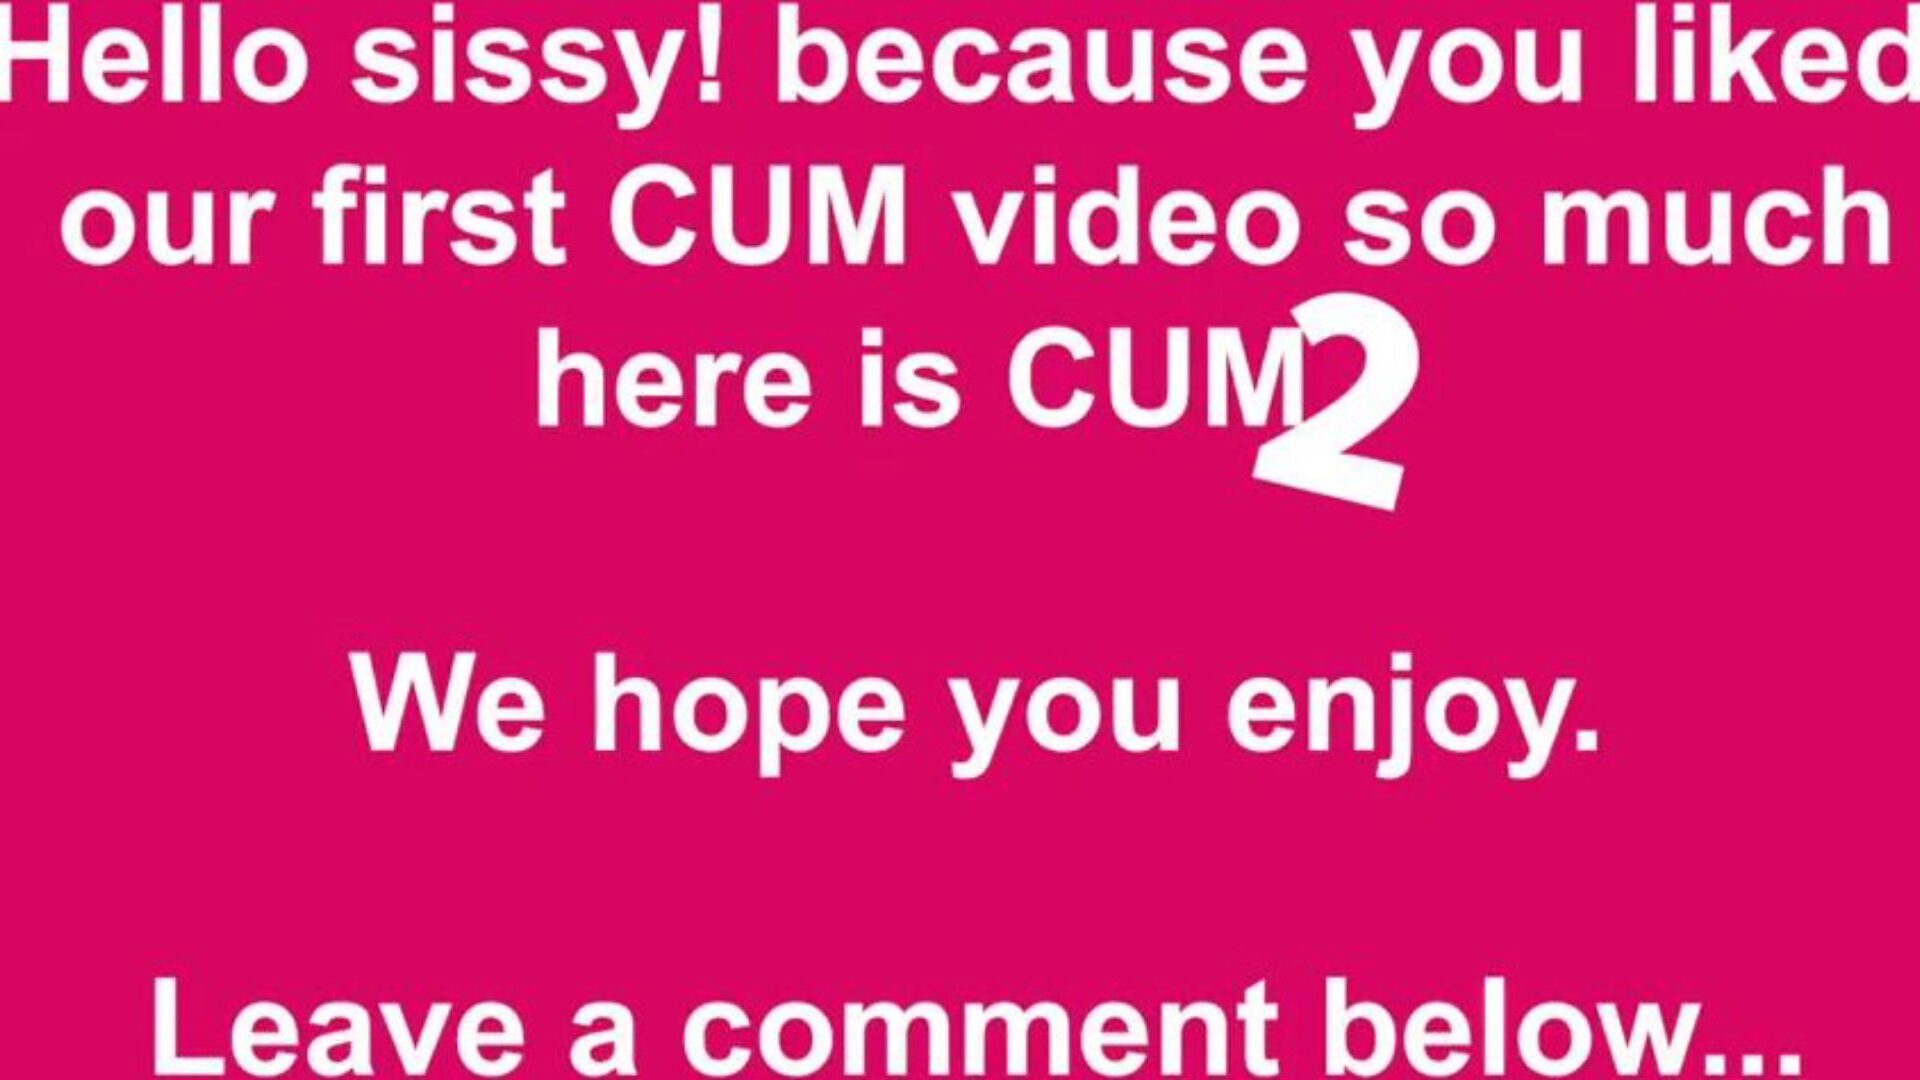 نائب الرئيس 2 free cum & cumming tube porn video 49 - xhamster مشاهدة cum 2 tube hook-up episode مجانًا على xhamster ، مع السرب السائد من كومينغ أنبوب مجاني وأنبوب اثنان hd porn حلقة العربات